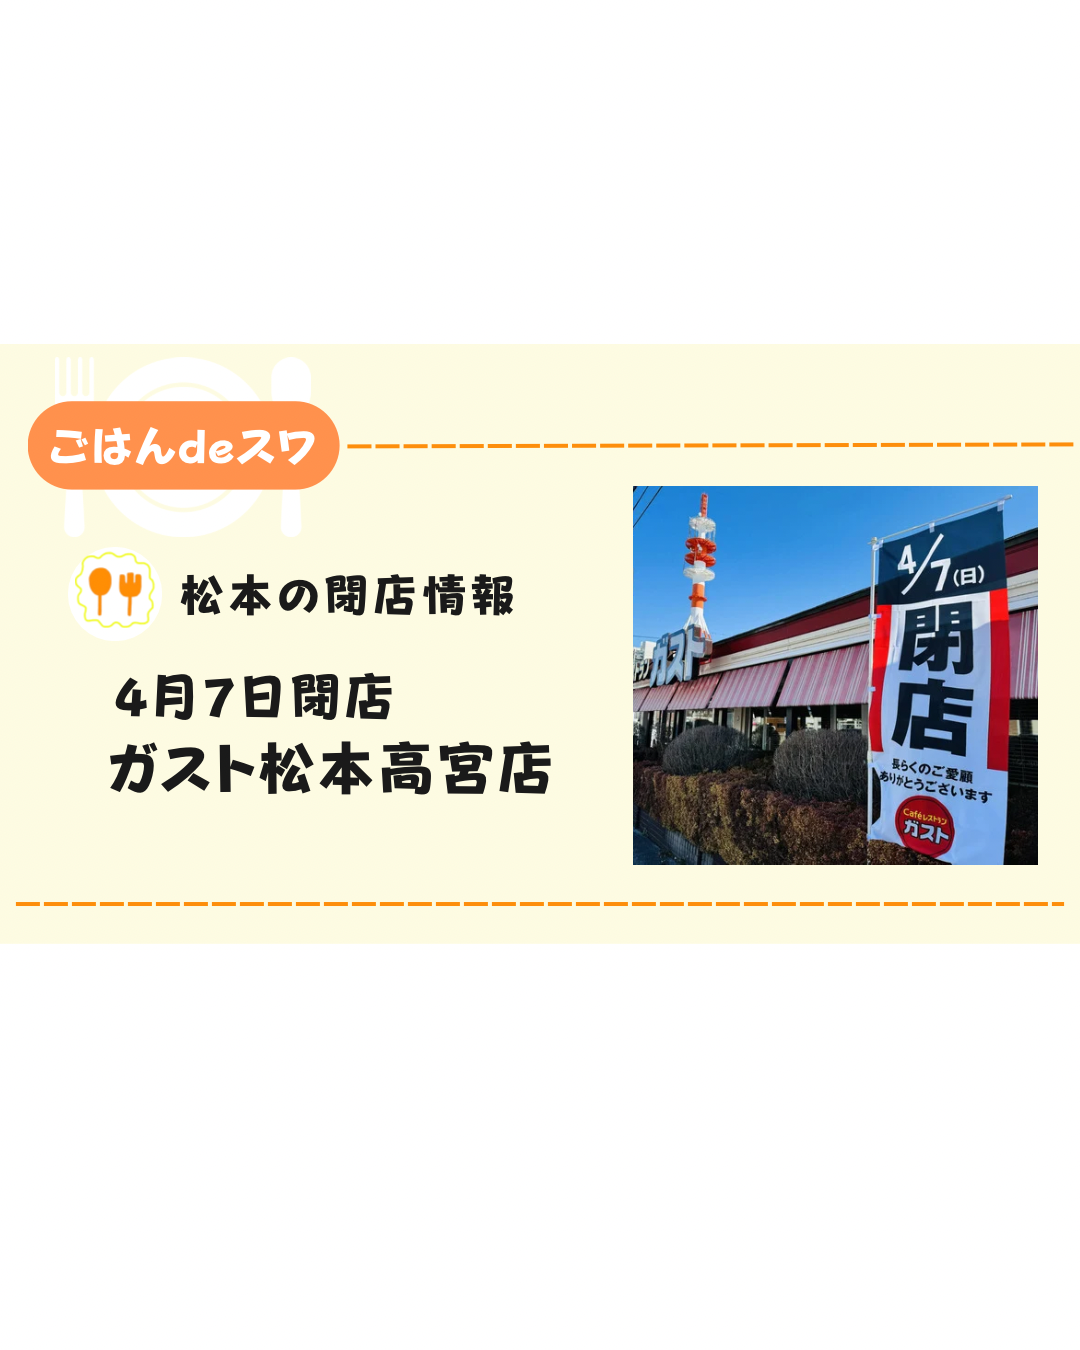 【4月17日】ガスト松本高宮店が閉店　跡地にバーミヤンがオープン予定か⁉︎